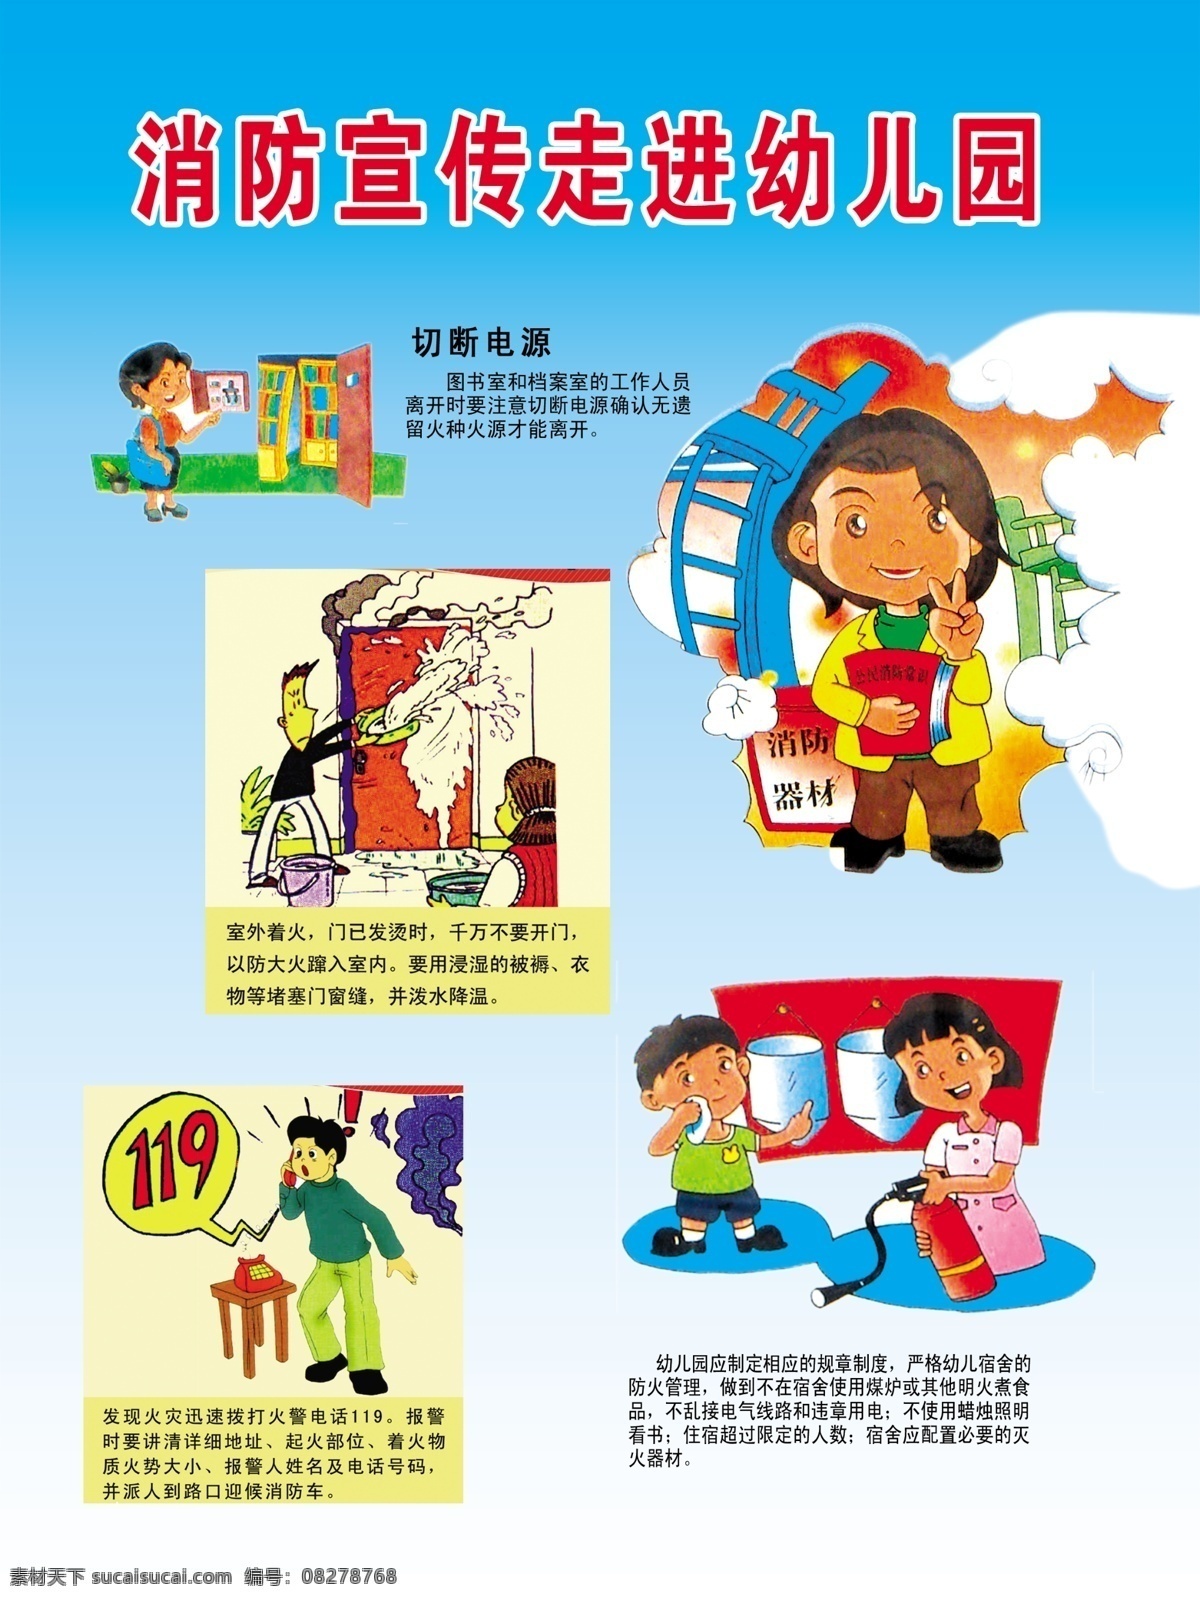 消防宣传 消防安全 幼儿园 宣传 幼儿园消防 幼儿园宣传 展板模板 广告设计模板 源文件